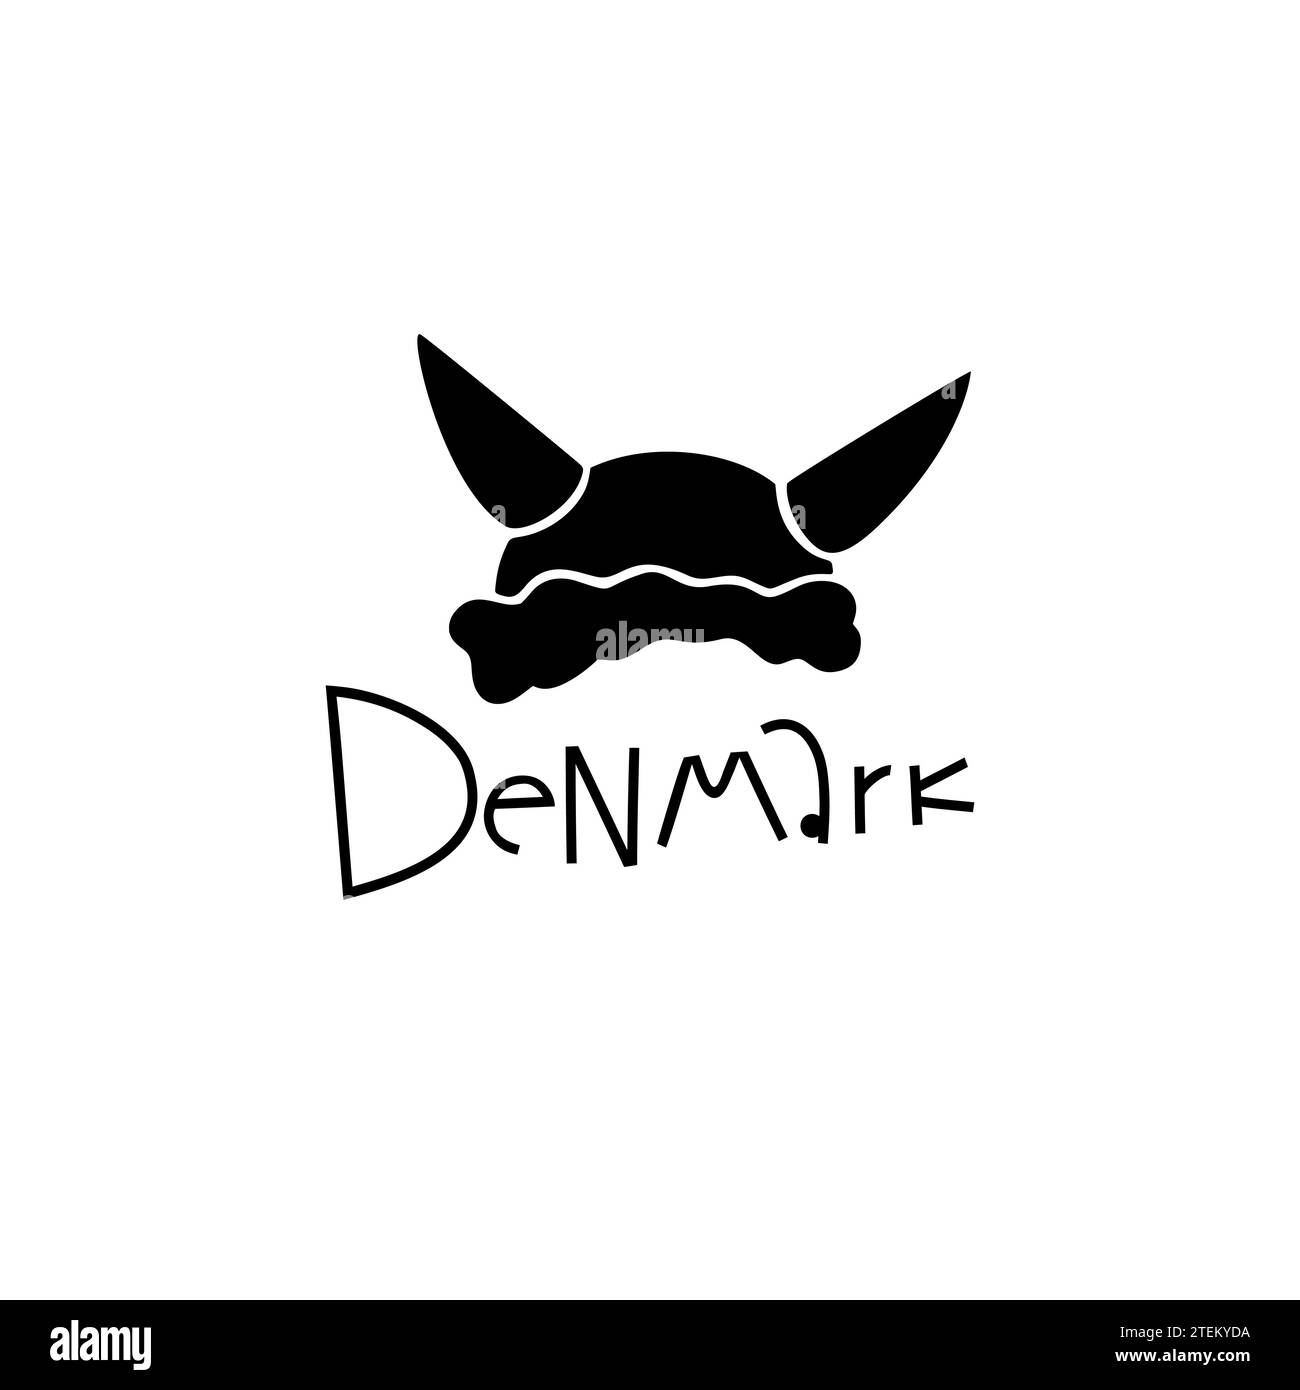 Vektor Handgezeichnetes Dänemark Label. Skandinavische Reise-Illustration. Schriftbild Handschriftlich Schreiben. Dänisches Symbol-Logo Stock Vektor